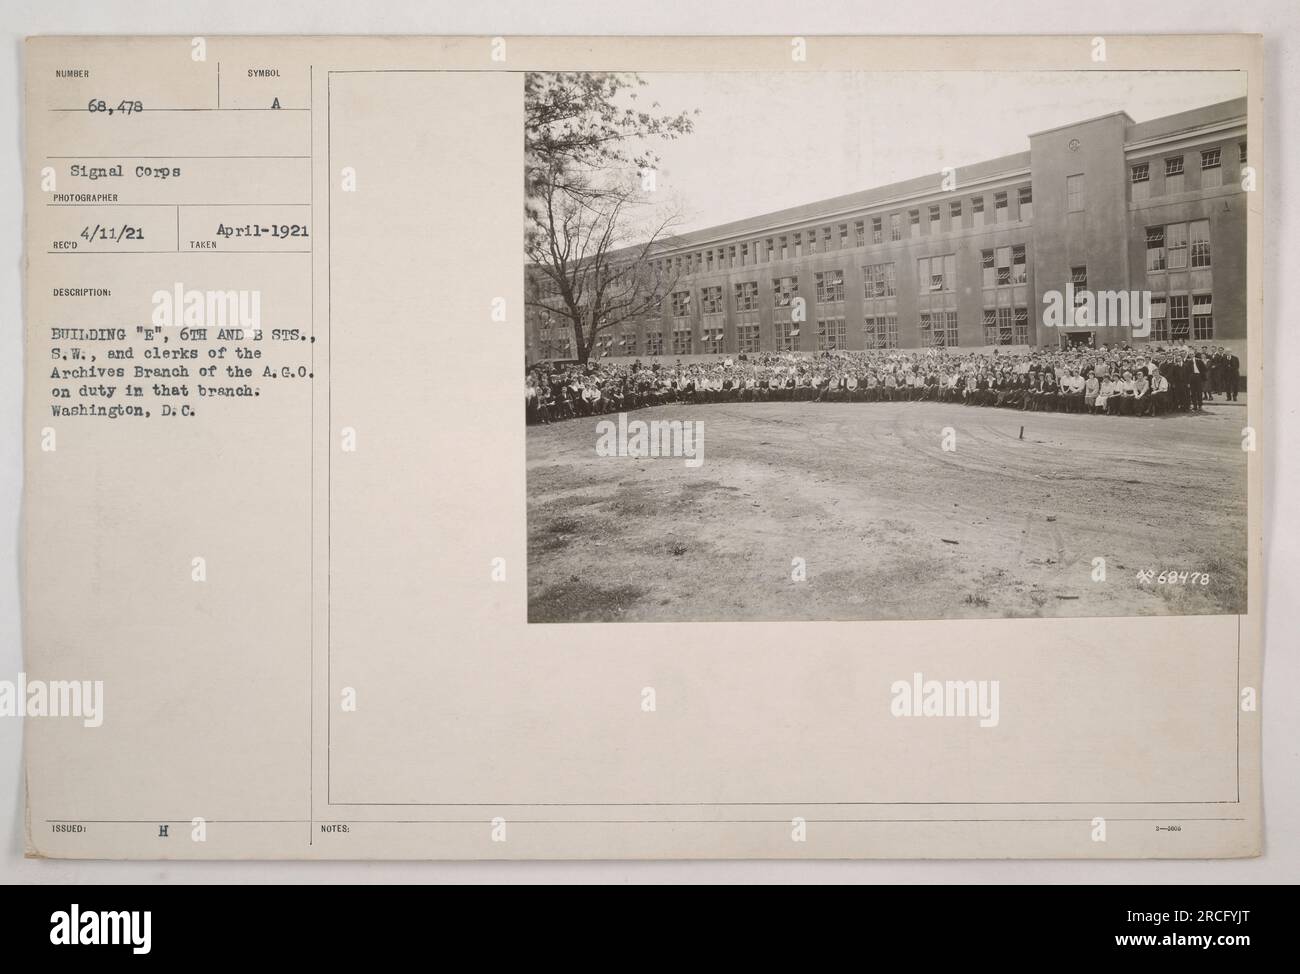 Angestellte der Archivabteilung der A.G.O. im Dienst in Gebäude E, 6. and B Sts., S.W., Washington, D.C. im April 1921. Dieses Bild ist Teil der Rekordfotos des KISI 68.478 Signal Corps von amerikanischen Militäraktivitäten während des Ersten Weltkriegs. Stockfoto